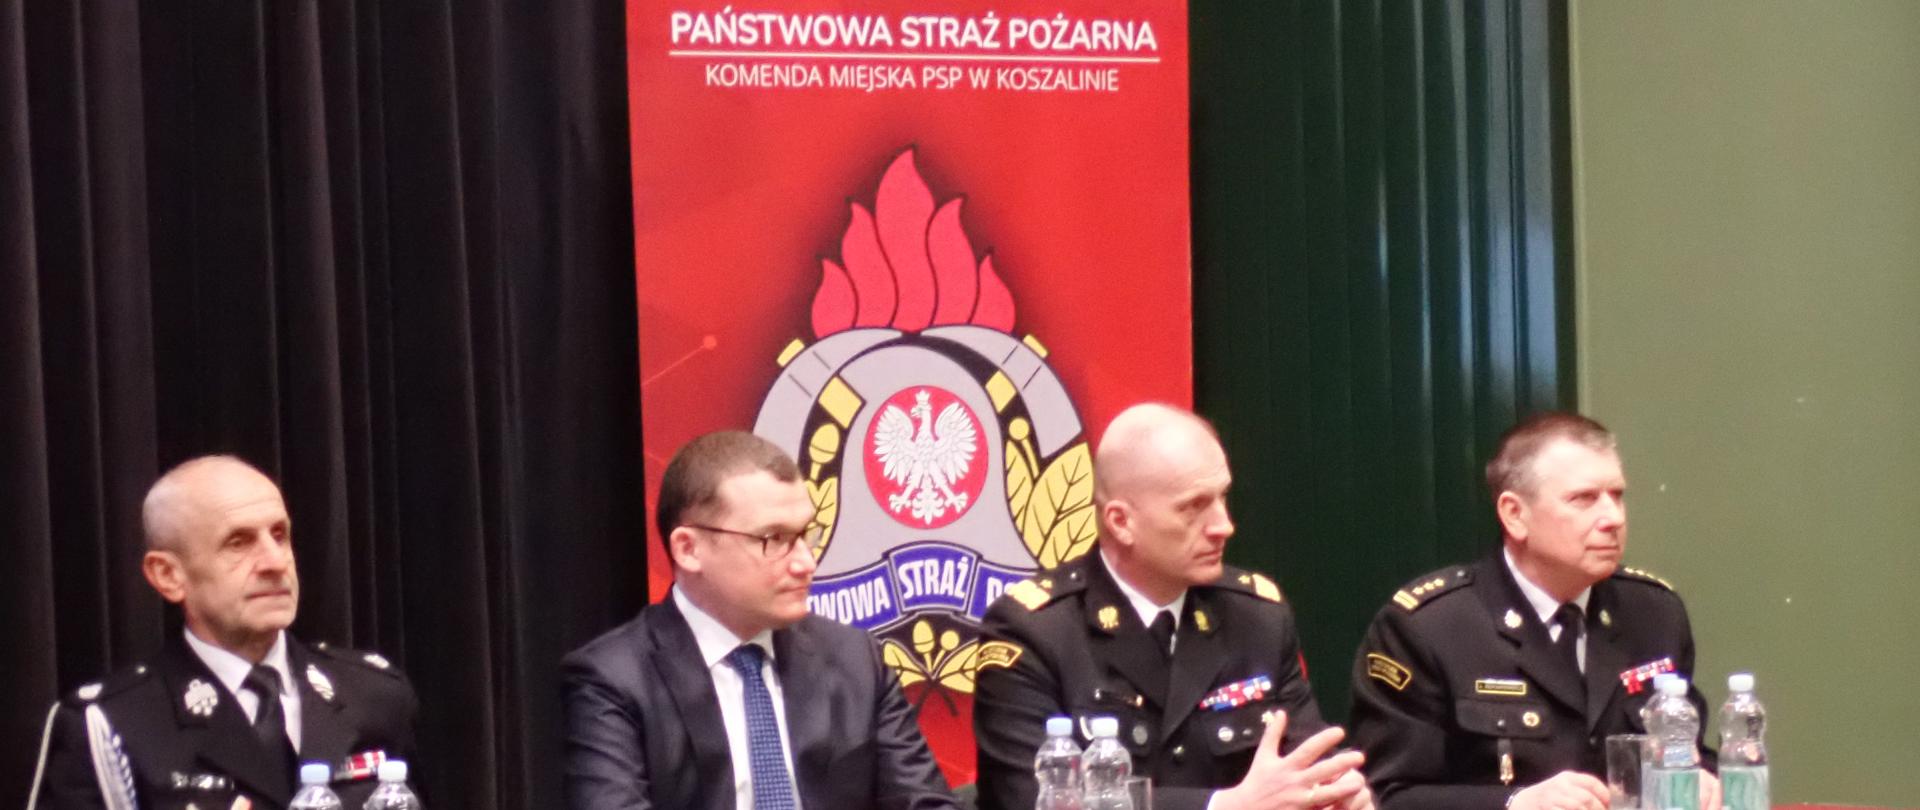 Narada podsumowująca działalność KM PSP w Koszalinie za rok 2022. Stół prezydialny z gośćmi.